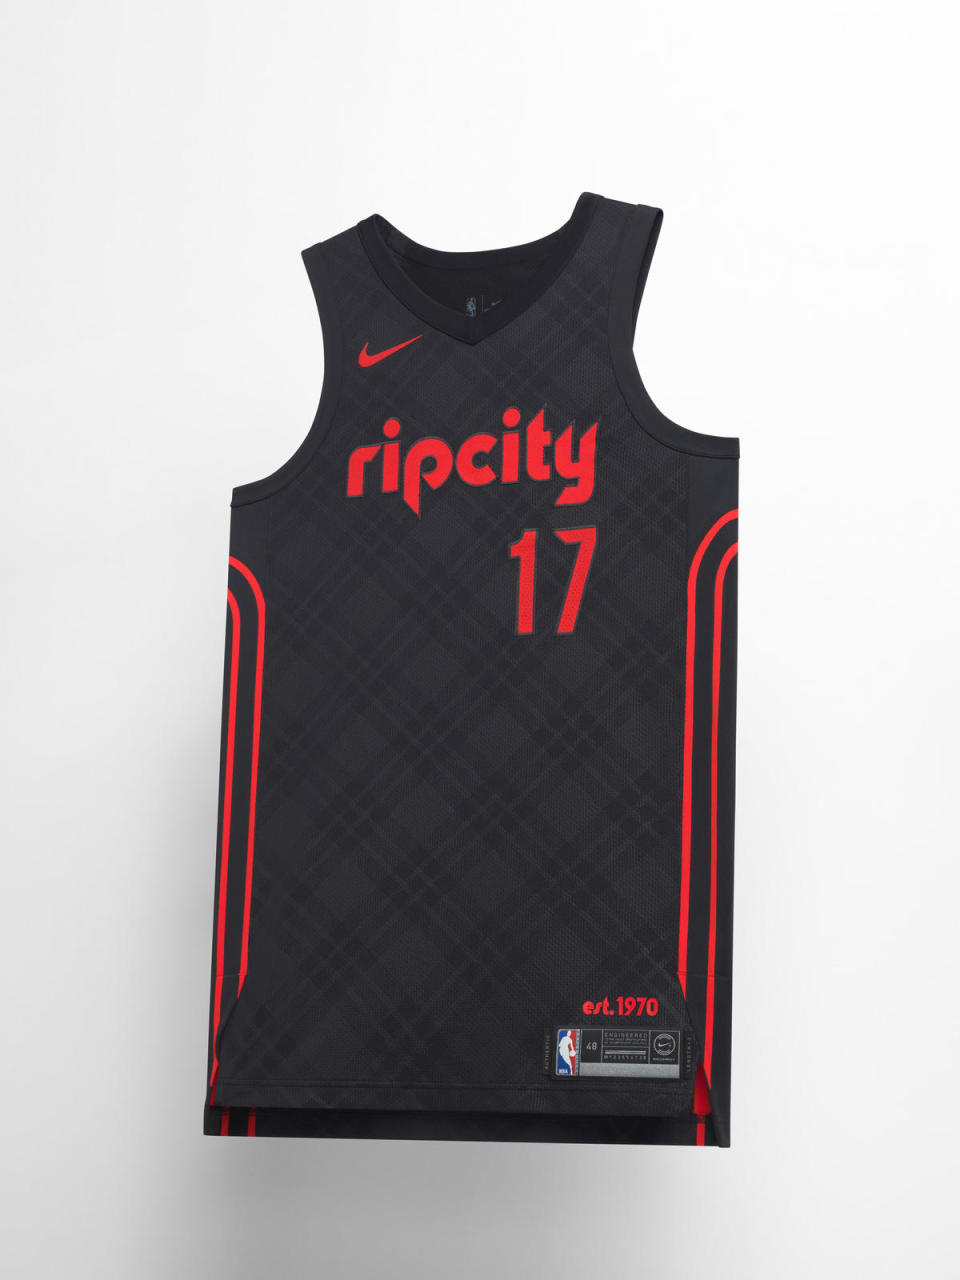 Portland Trail Blazers City uniform. (Nike)